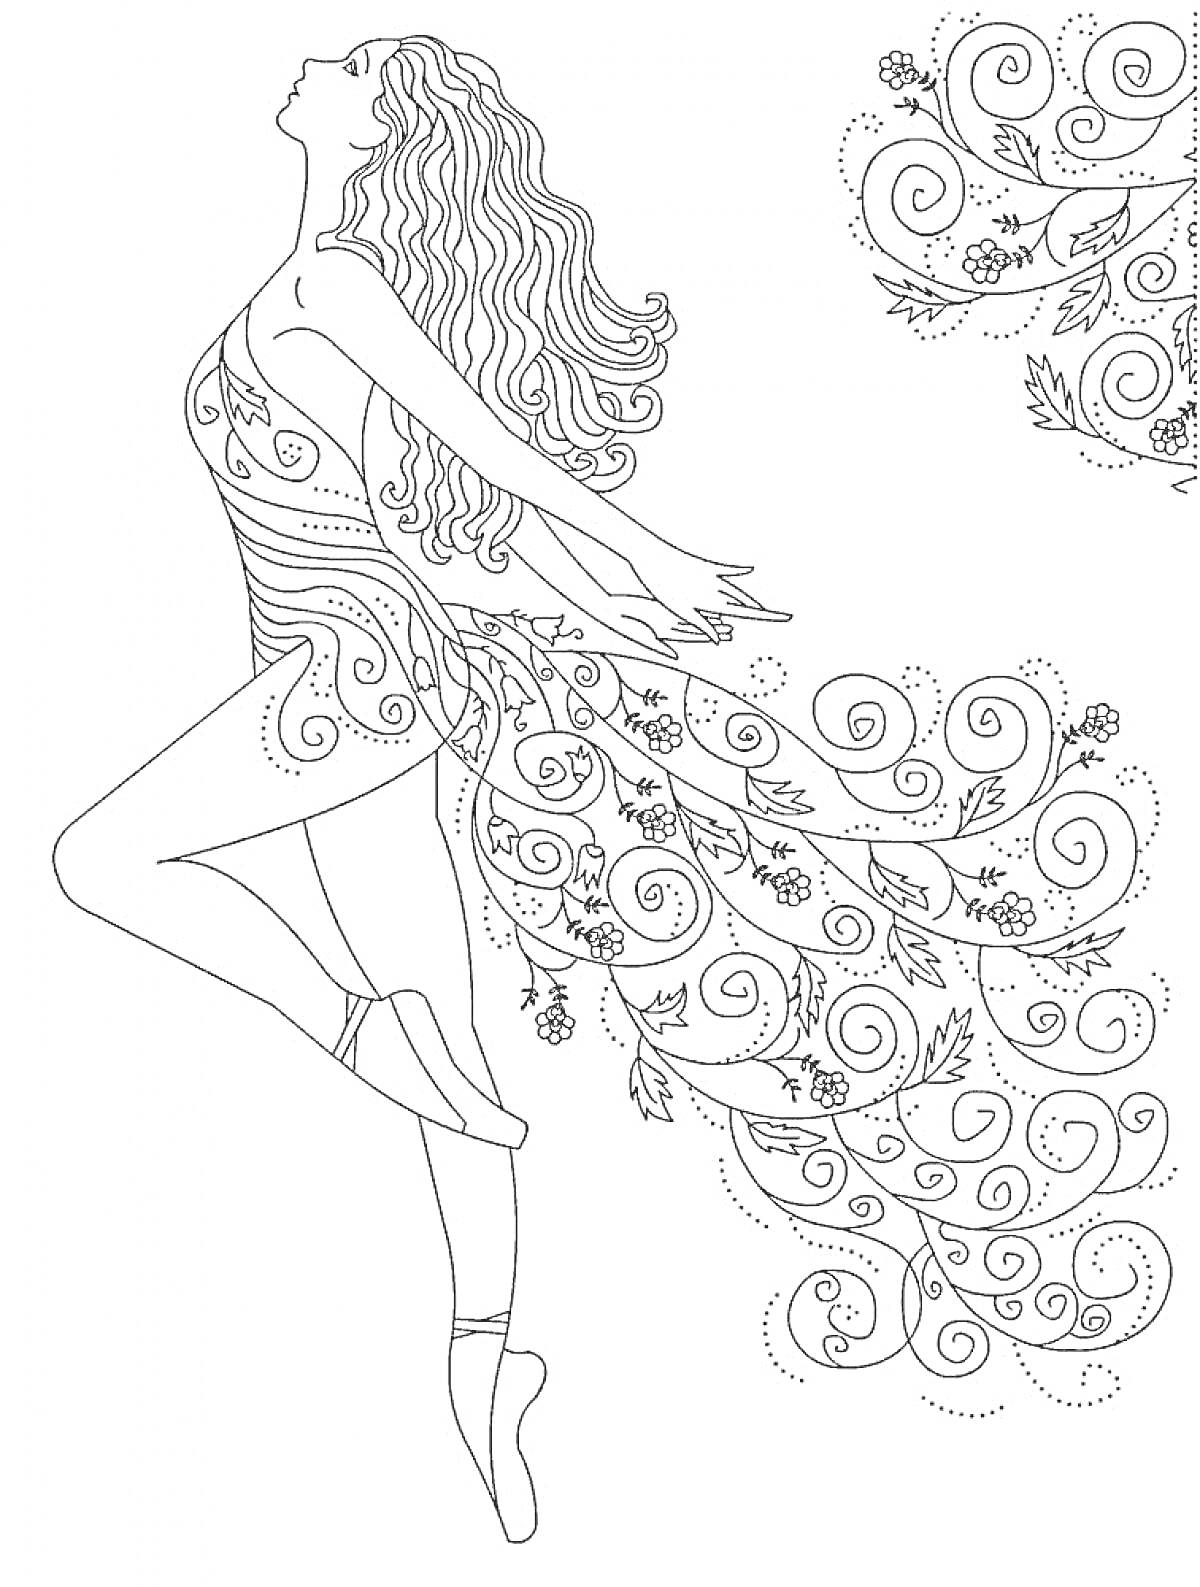 Балерина с длинными волосами в пачке с цветочными и узорными элементами, на пуантах, с задним фоном в виде завитков и узоров